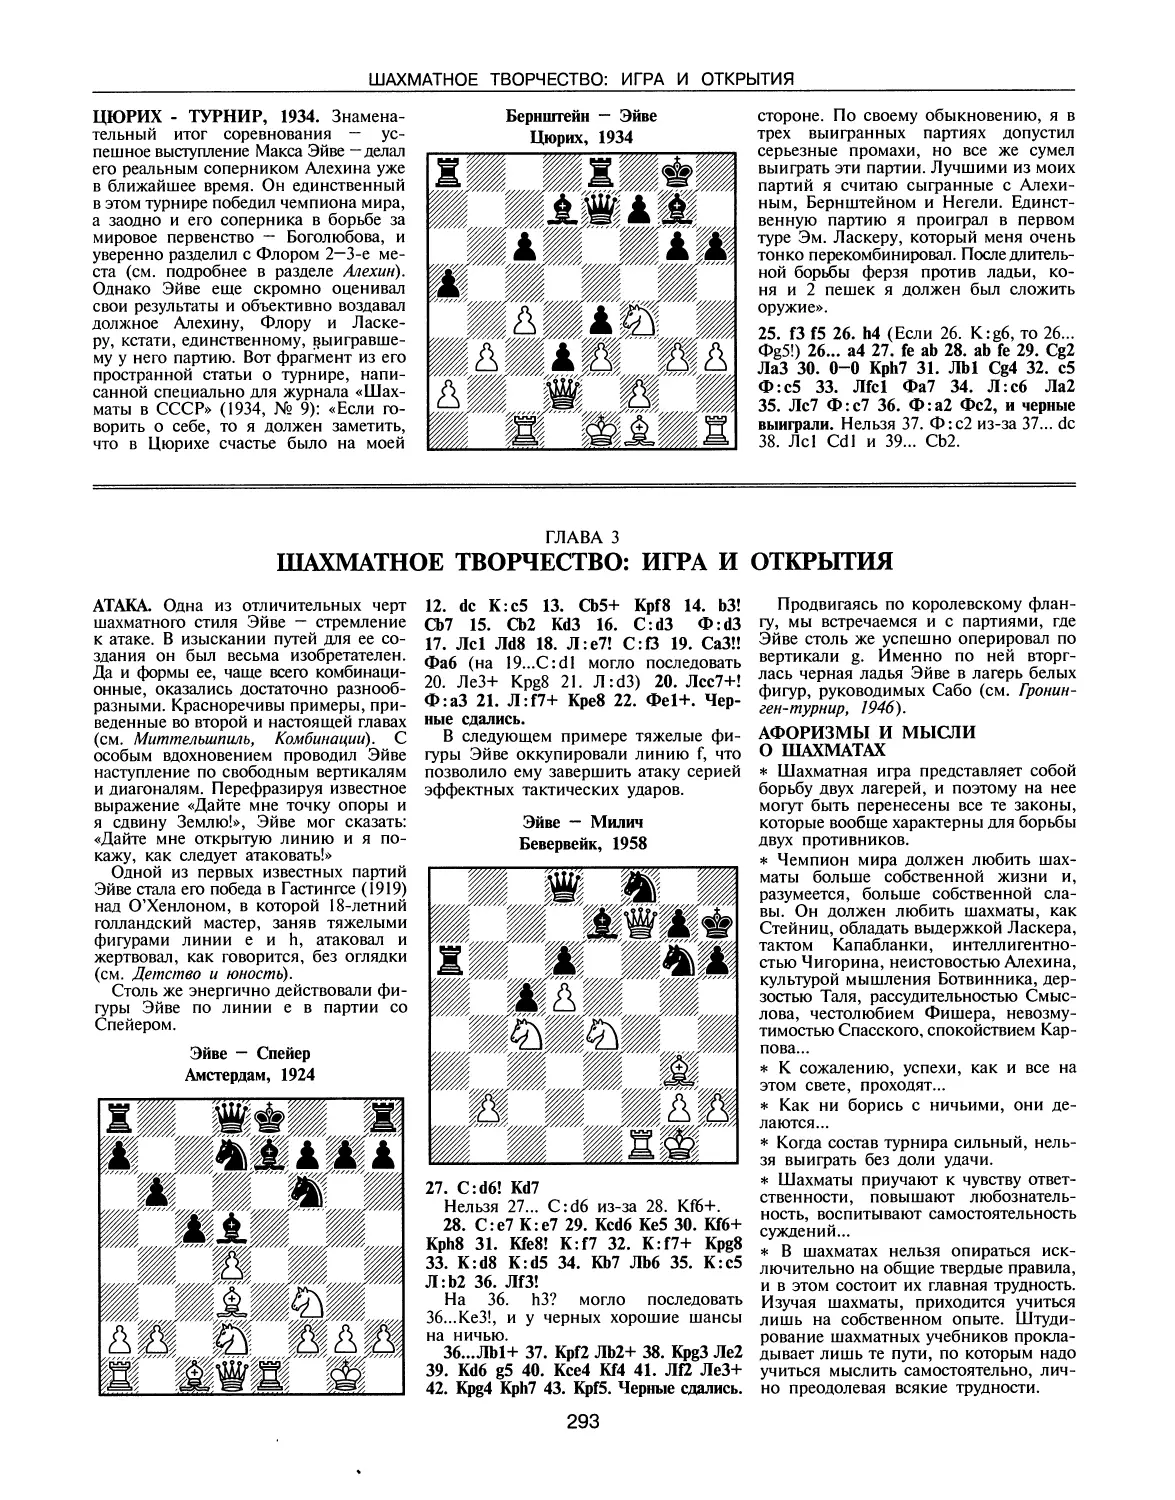 Цюрих-турнир, 1934
ГЛАВА 3. Шахматное творчество: игра и открытия
Афоризмы и мысли о шахматах